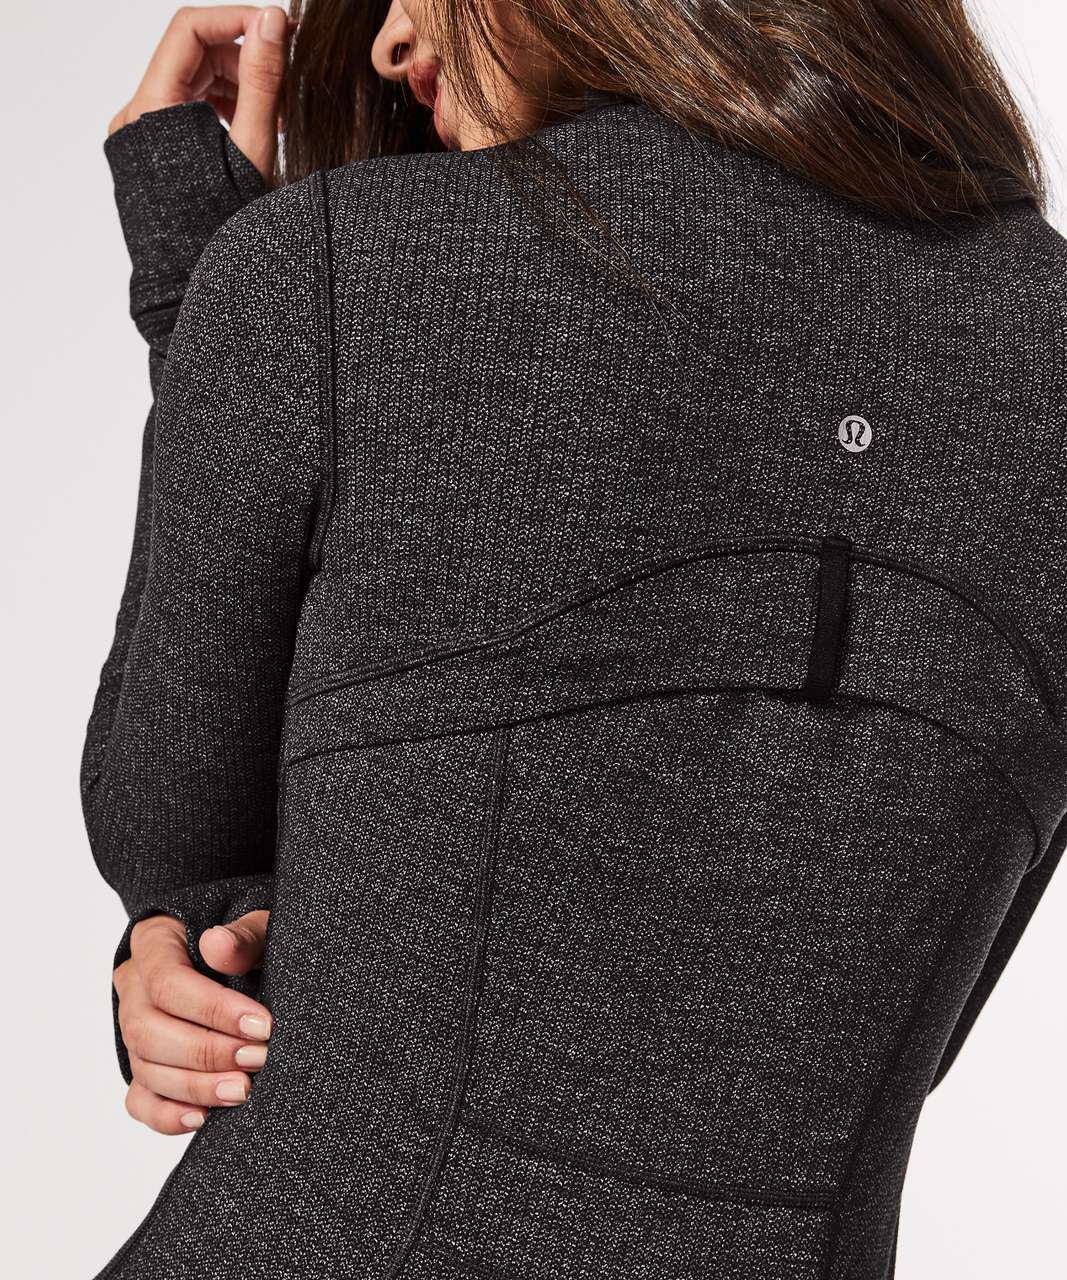 Lululemon Define Jacket - Luon Variegated Knit Black Heathered